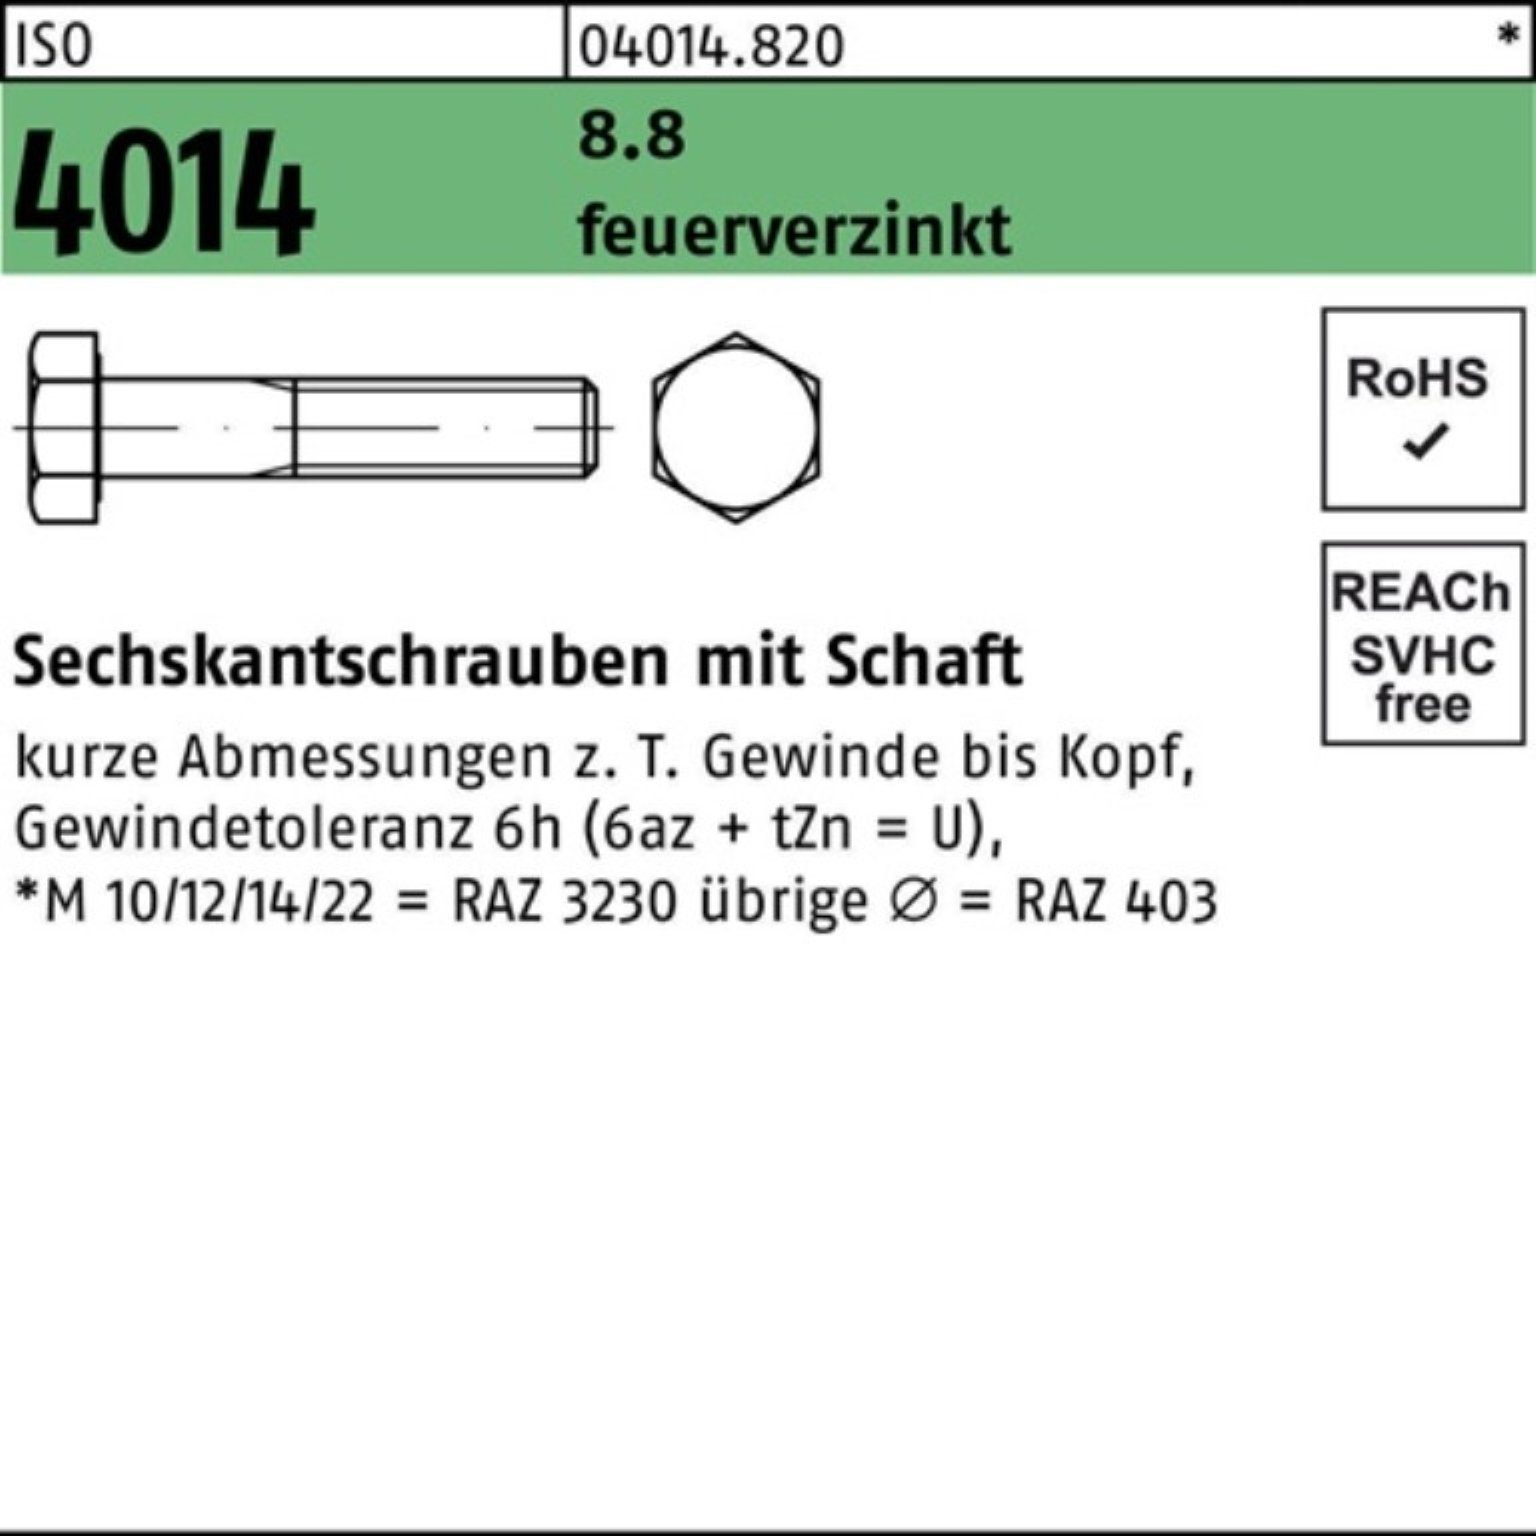 Bufab Sechskantschraube 100er Pack Sechskantschraube ISO 4014 Schaft M27x 130 8.8 feuerverz. 1